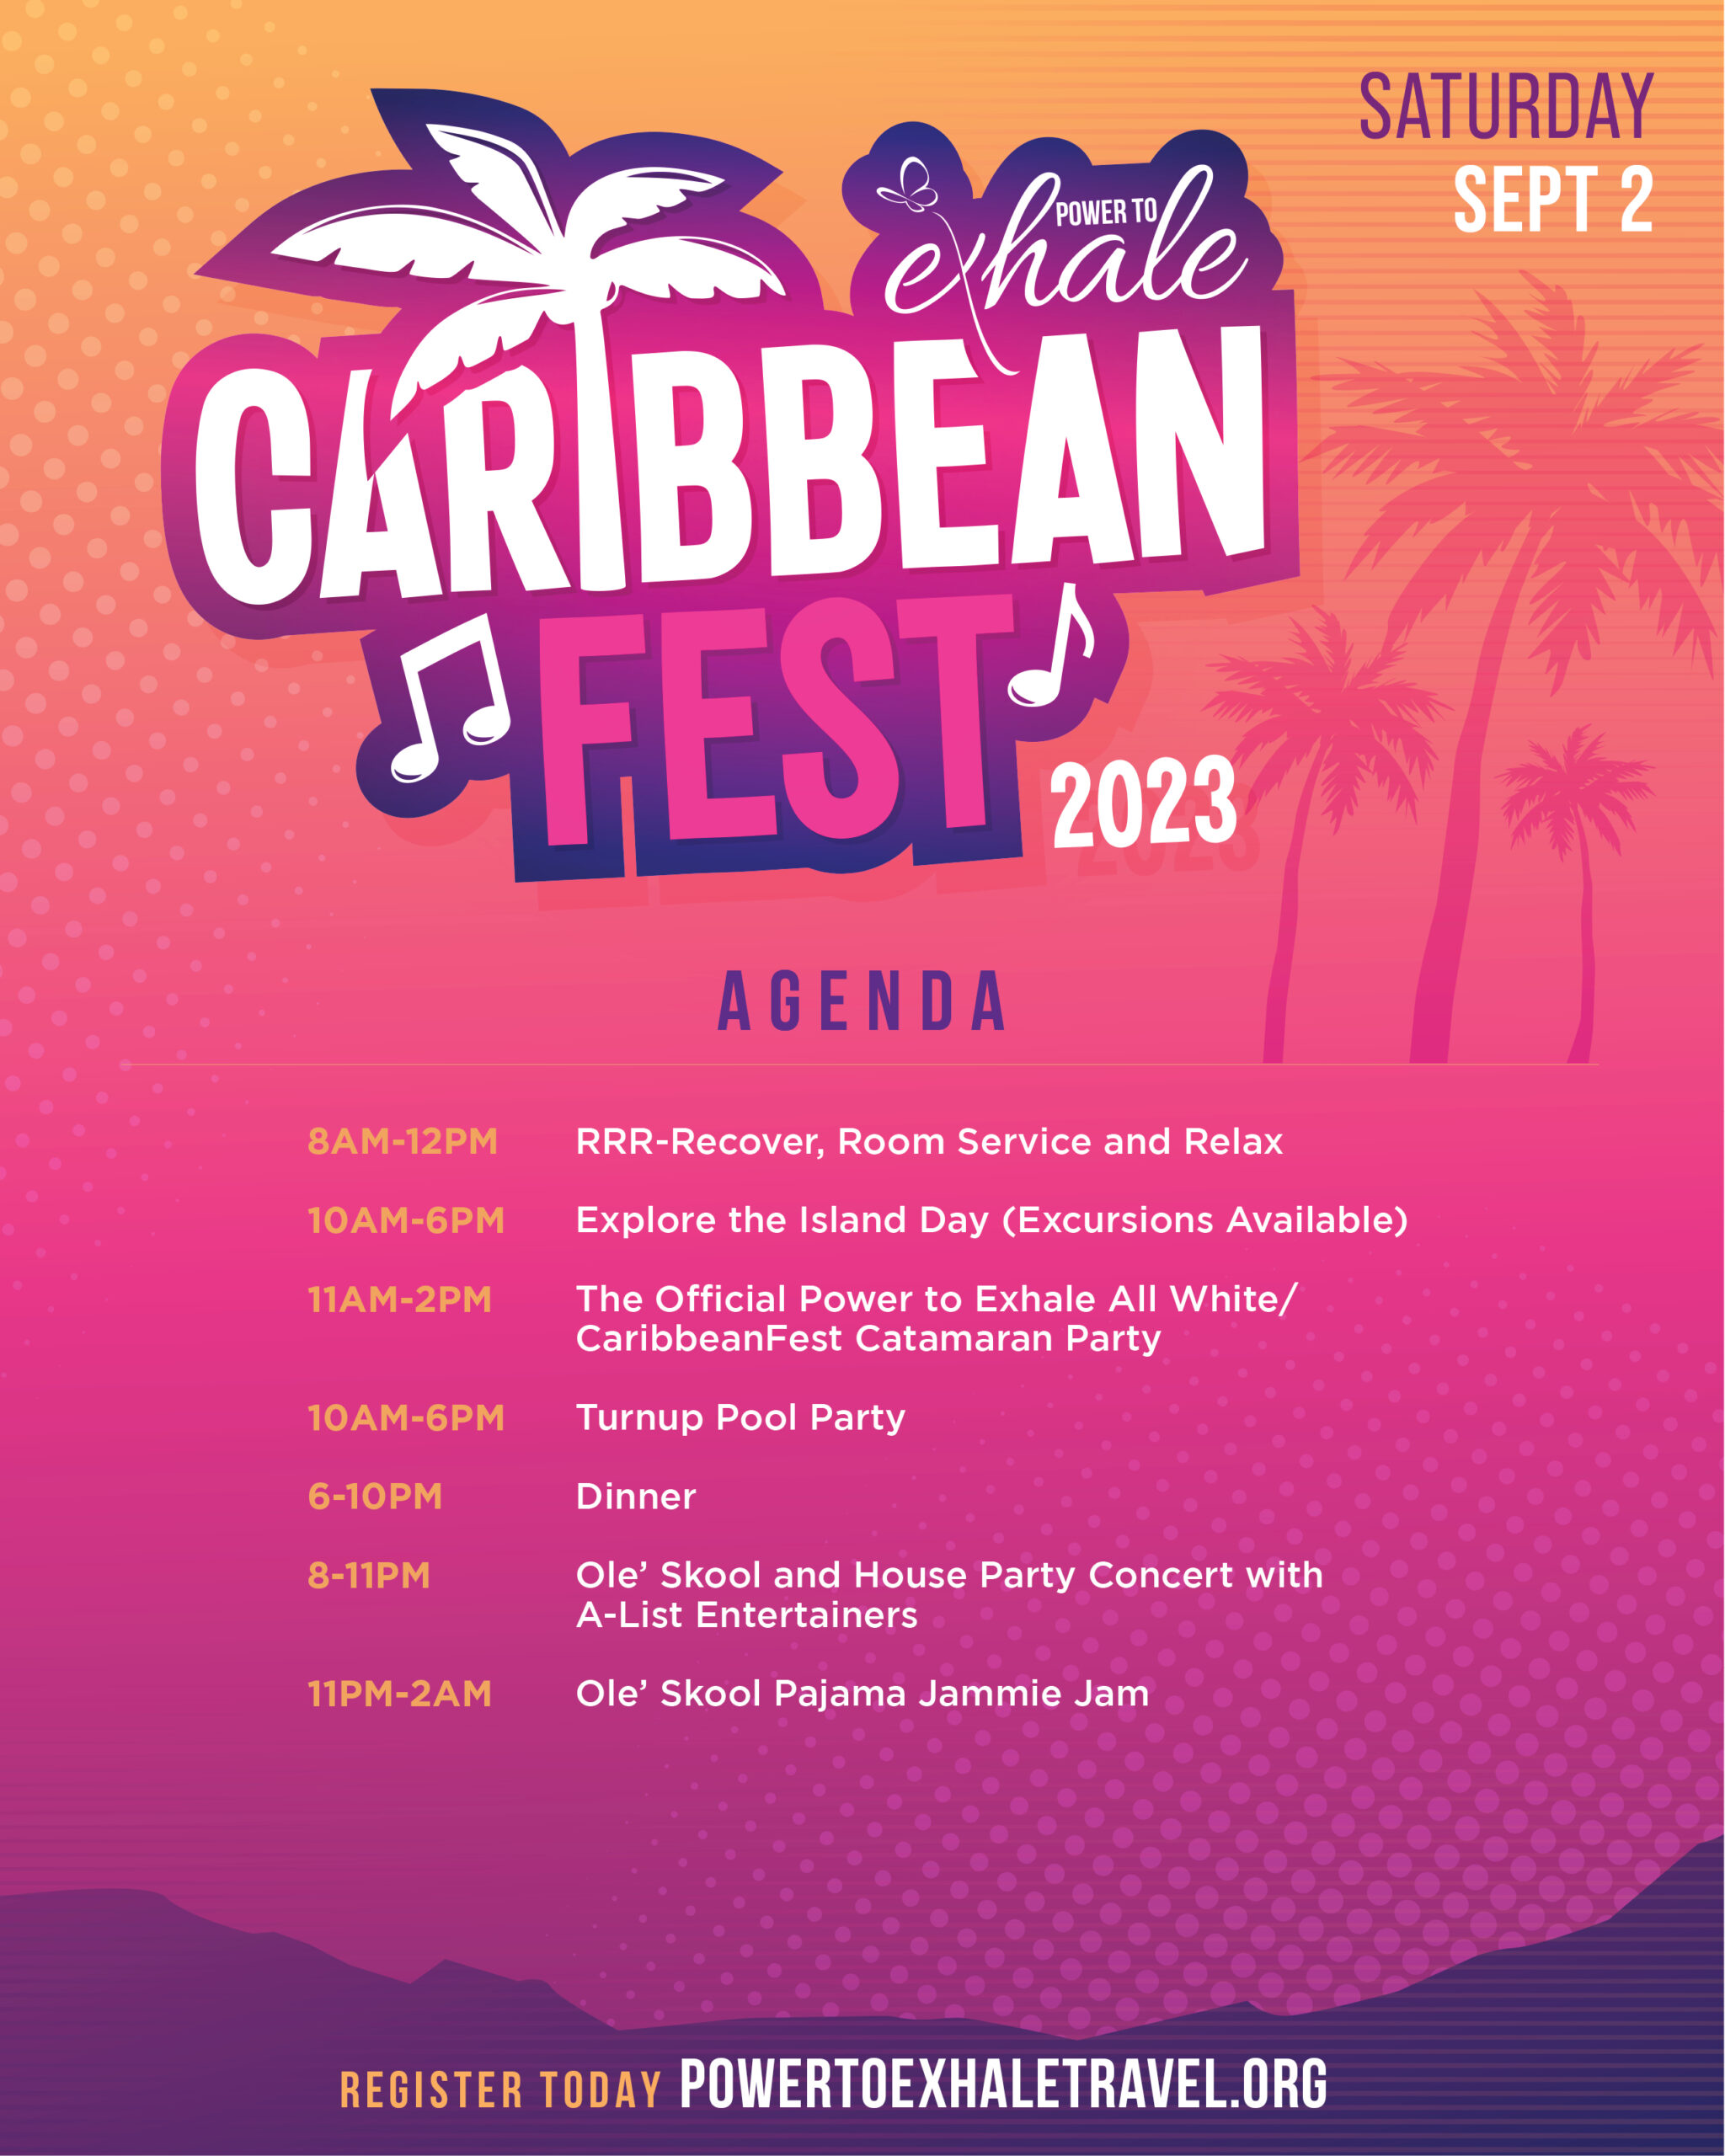 Flyer_CaribbeanFest_Agenda_Sat